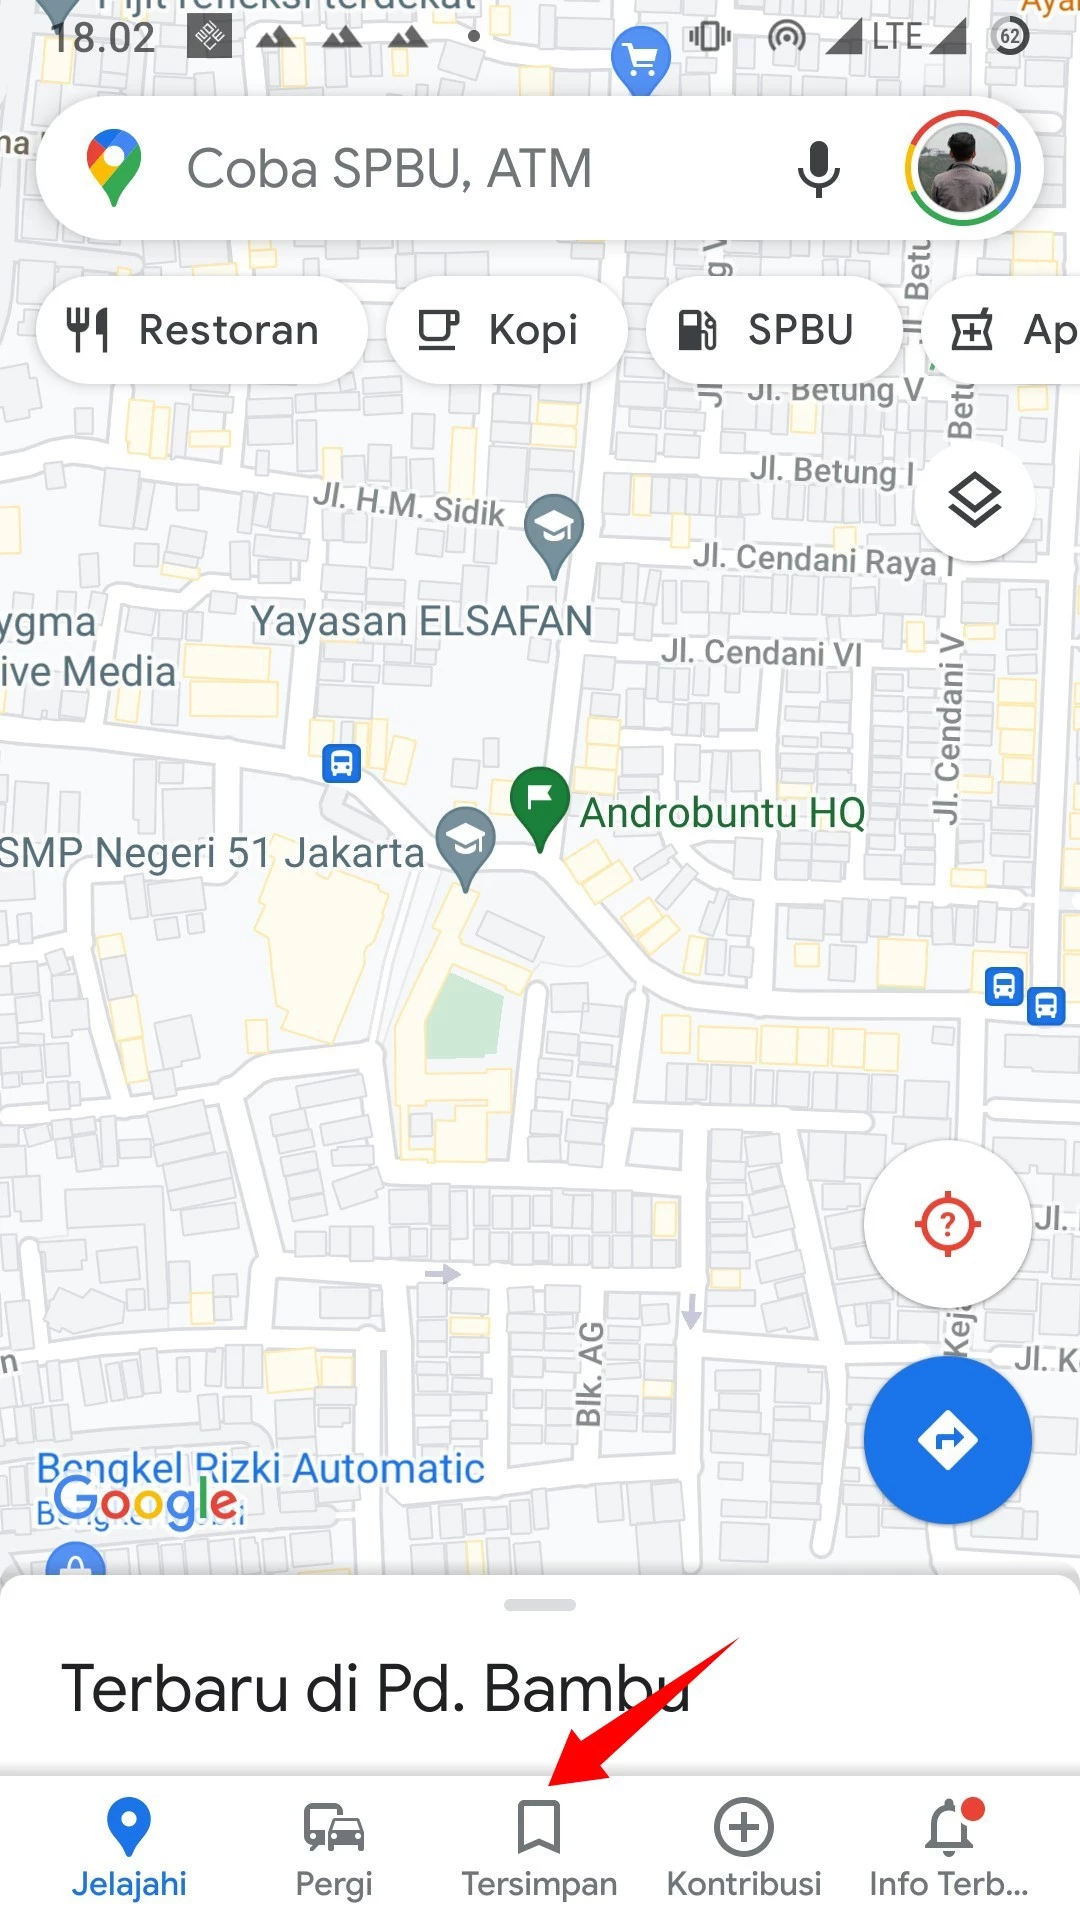 Cara Menyimpan Tempat Favorit di Google Maps by Androbuntu 4